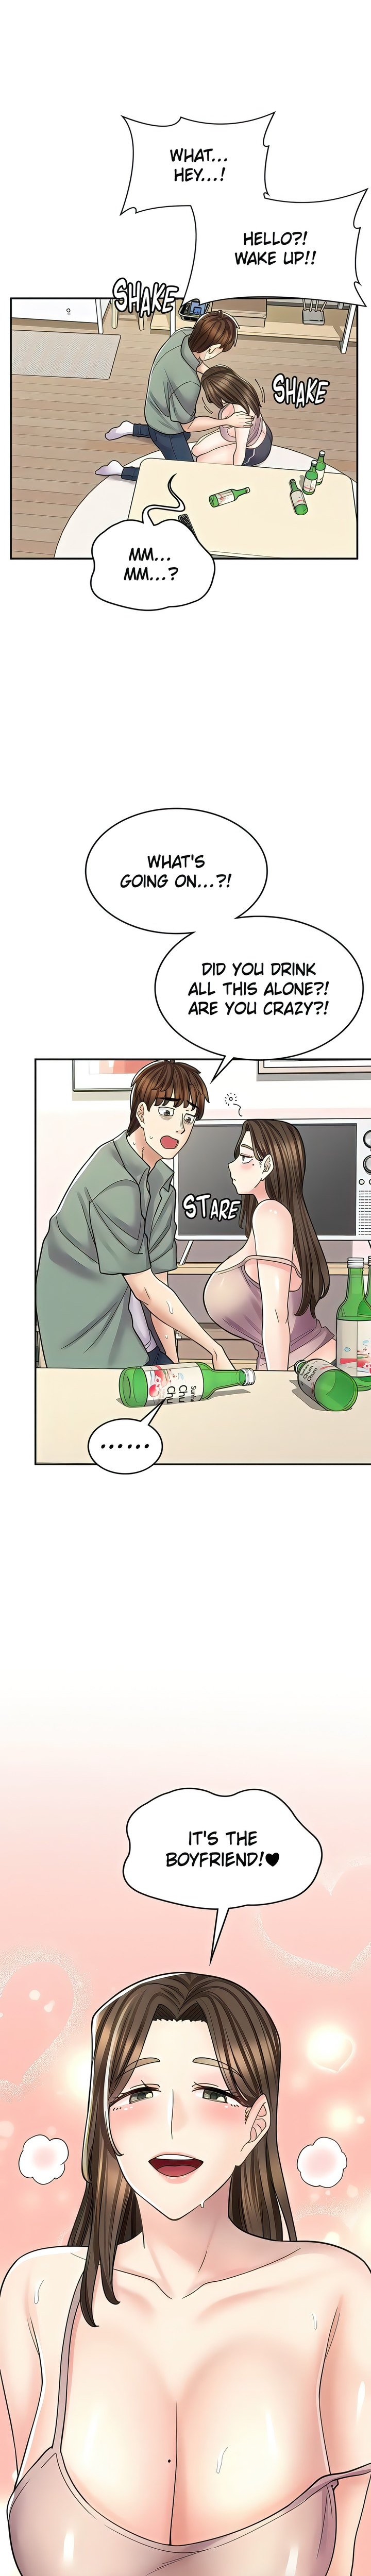 erotic-manga-cafe-girls-chap-39-22